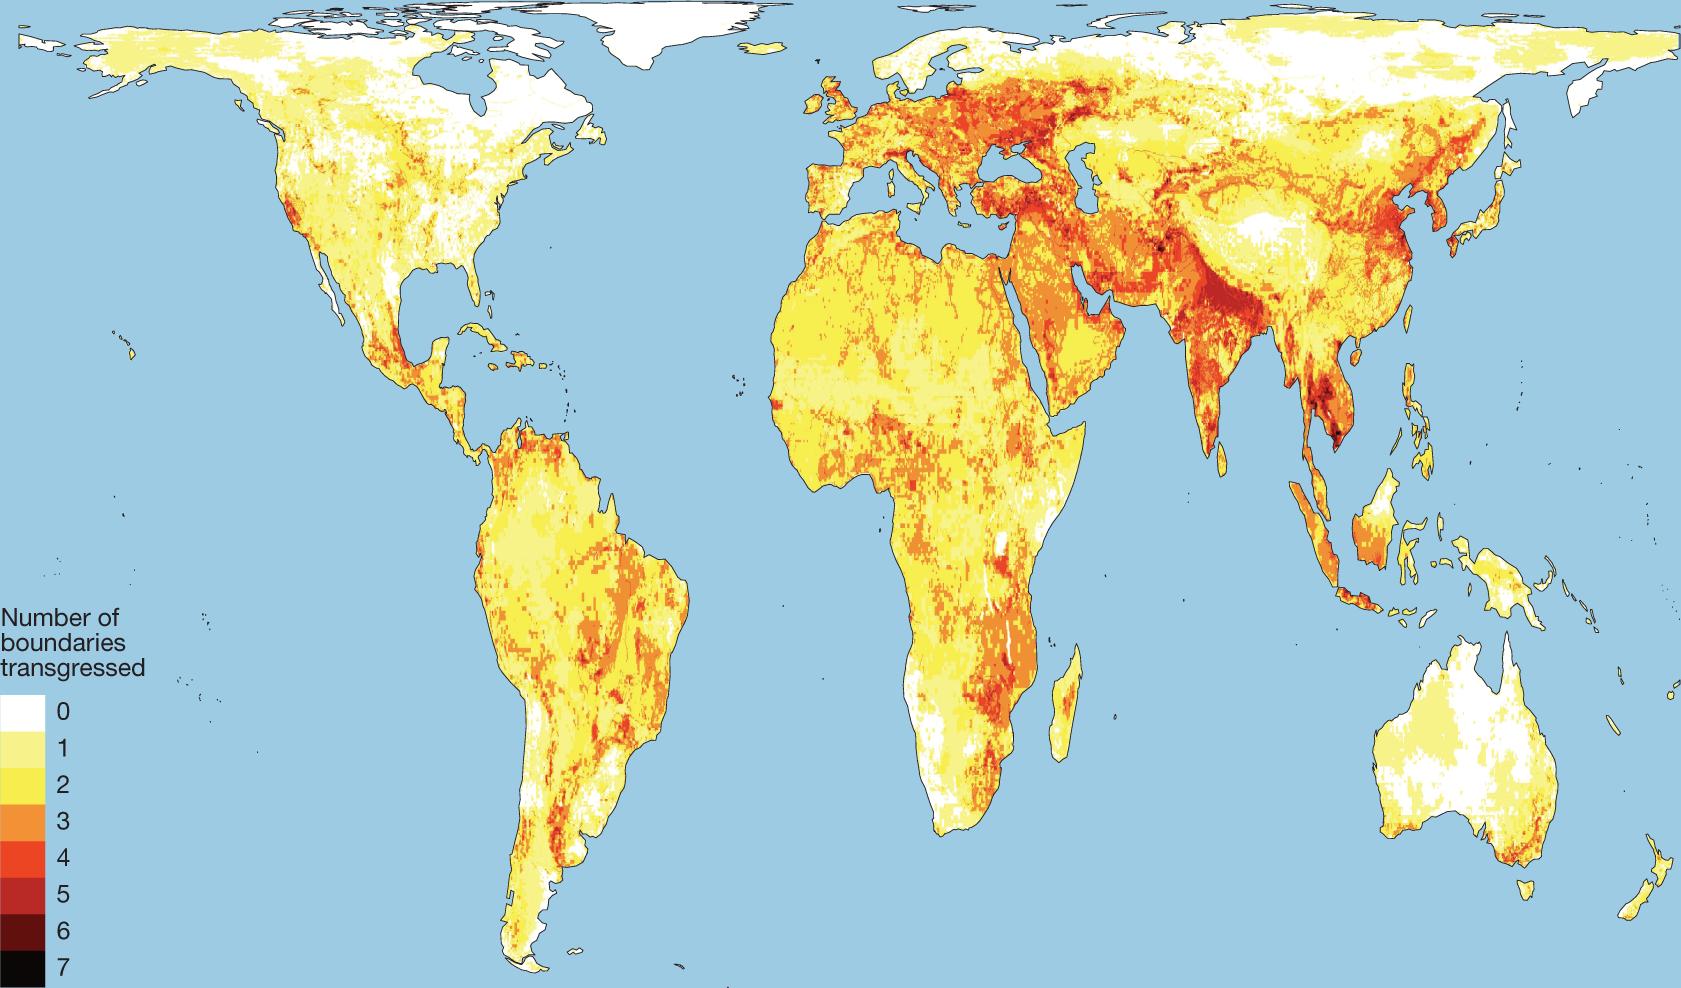 Mapa świata pokazująca liczbę przekroczonych "granic wytrzymałości" w danym obszarze